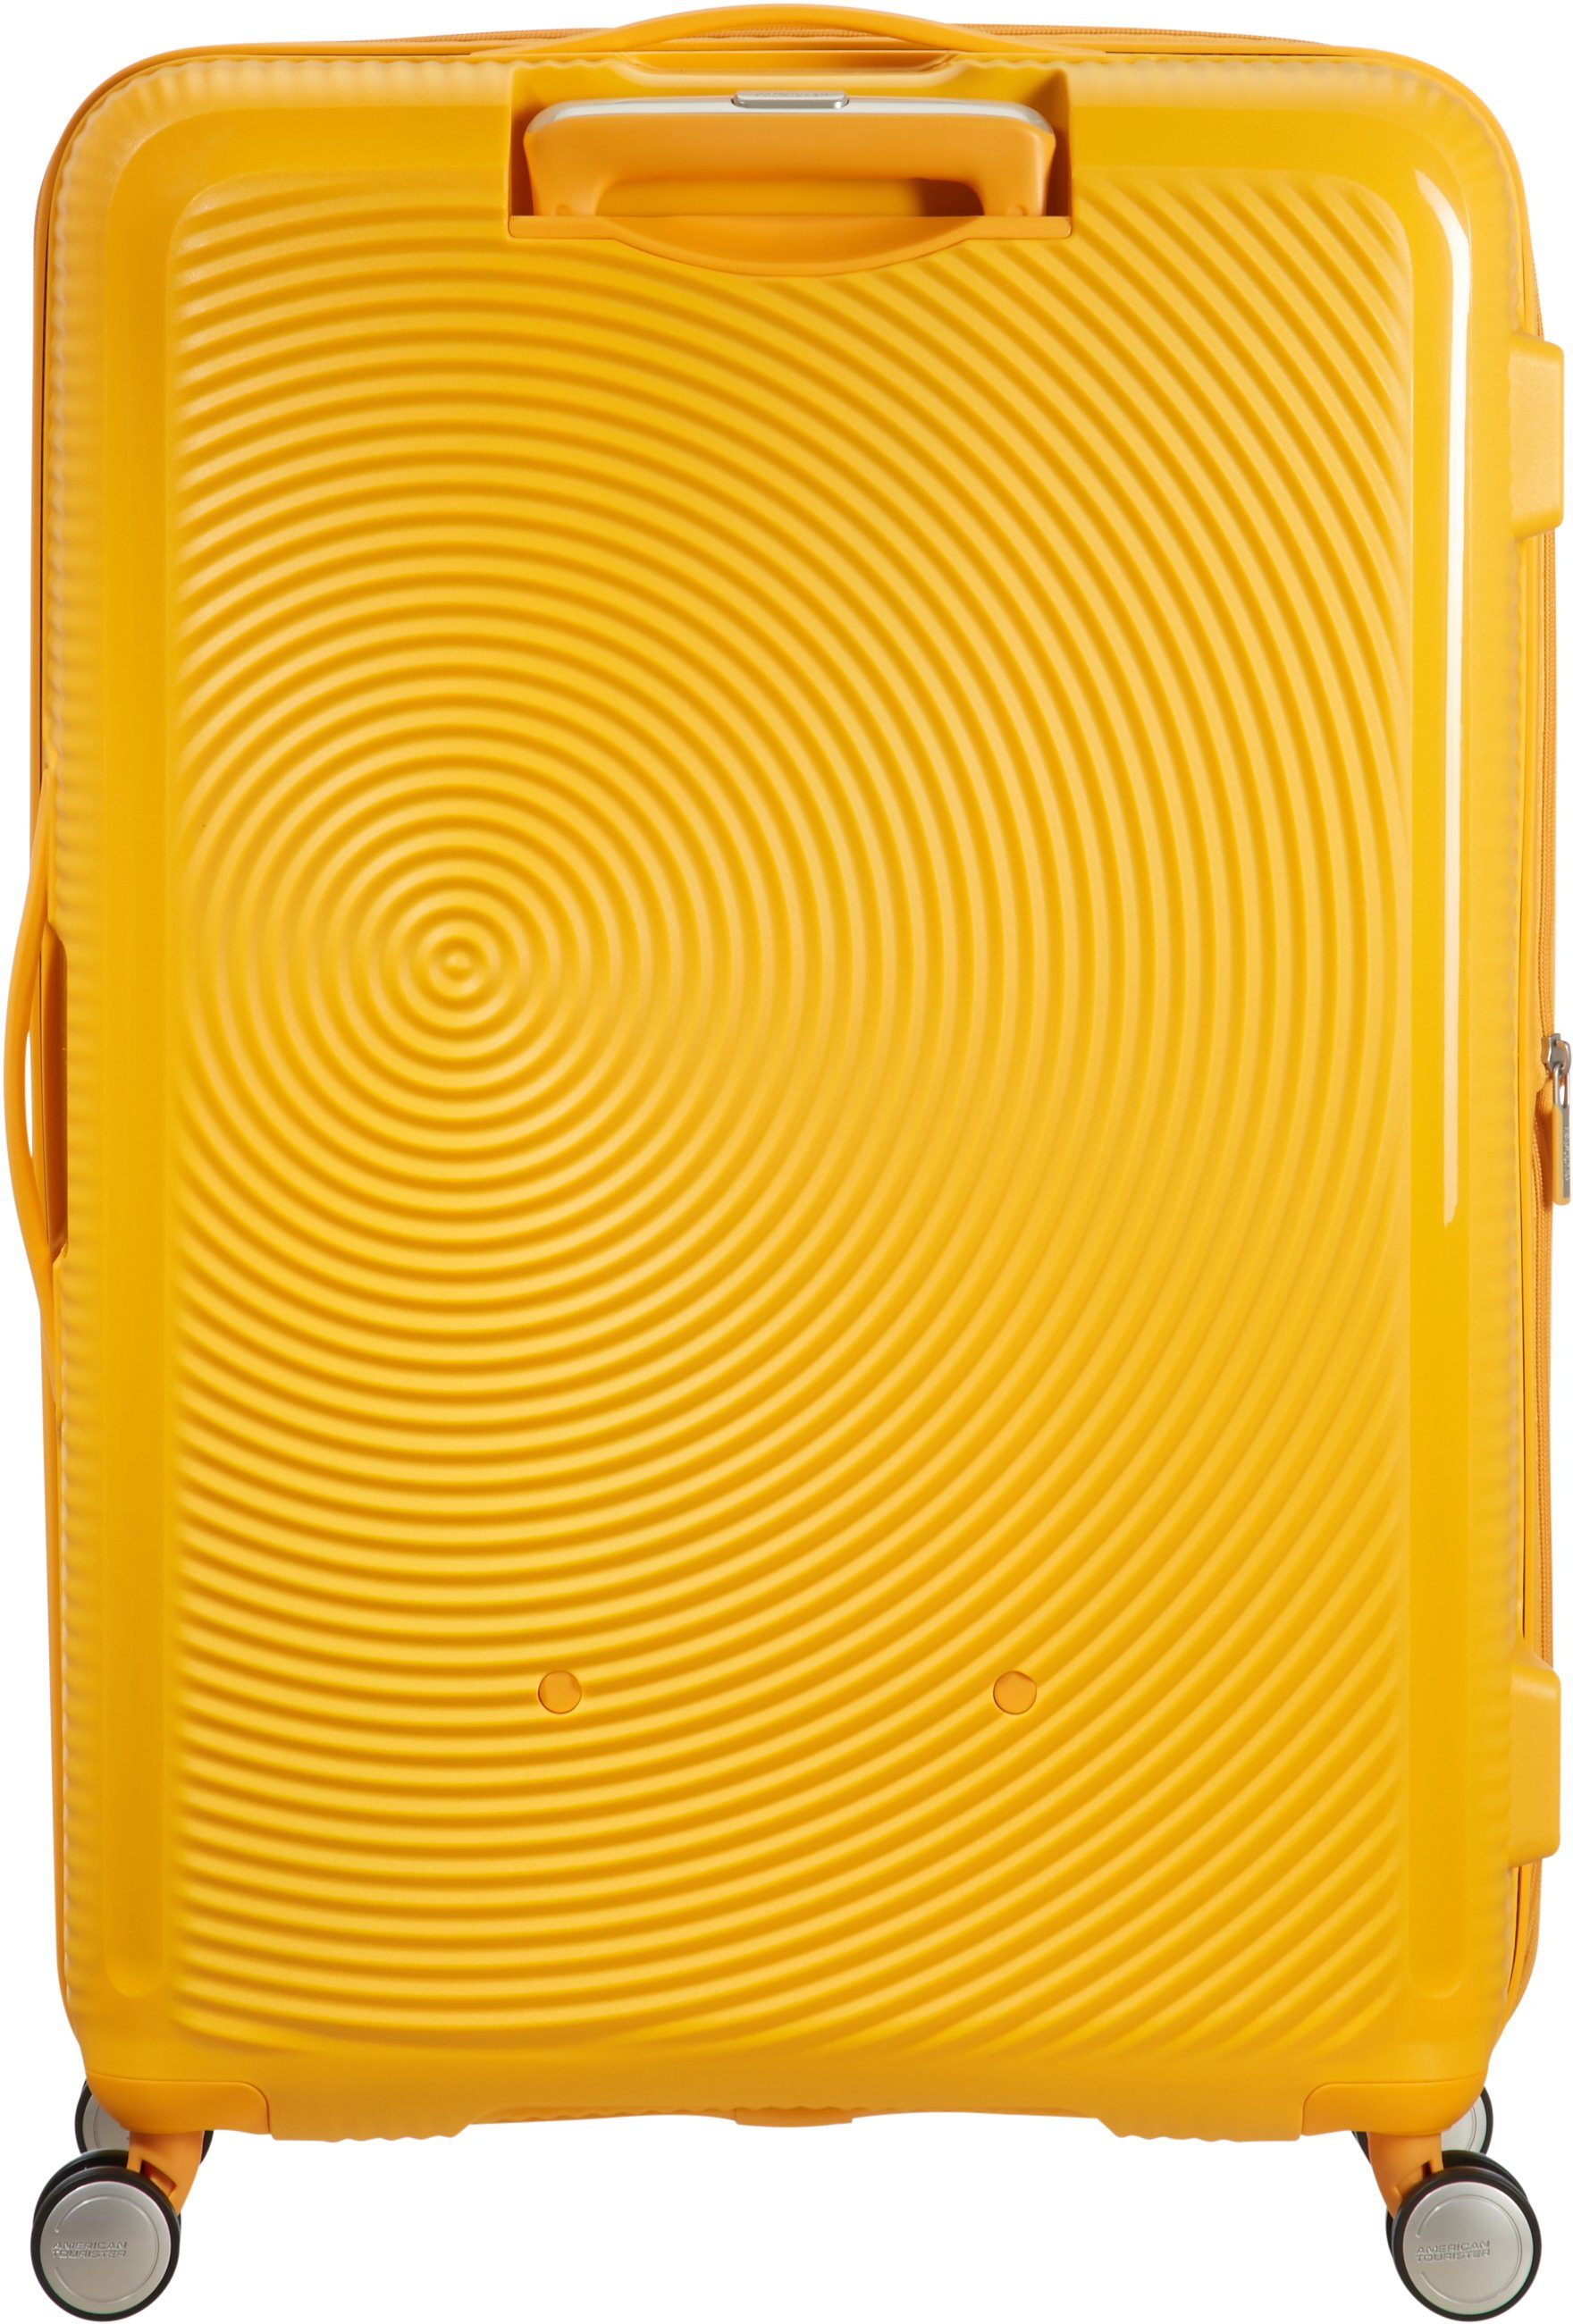 Tourister® Yellow Rollen, Volumenerweiterung 4 Golden Hartschalen-Trolley mit 77 cm, Soundbox, American